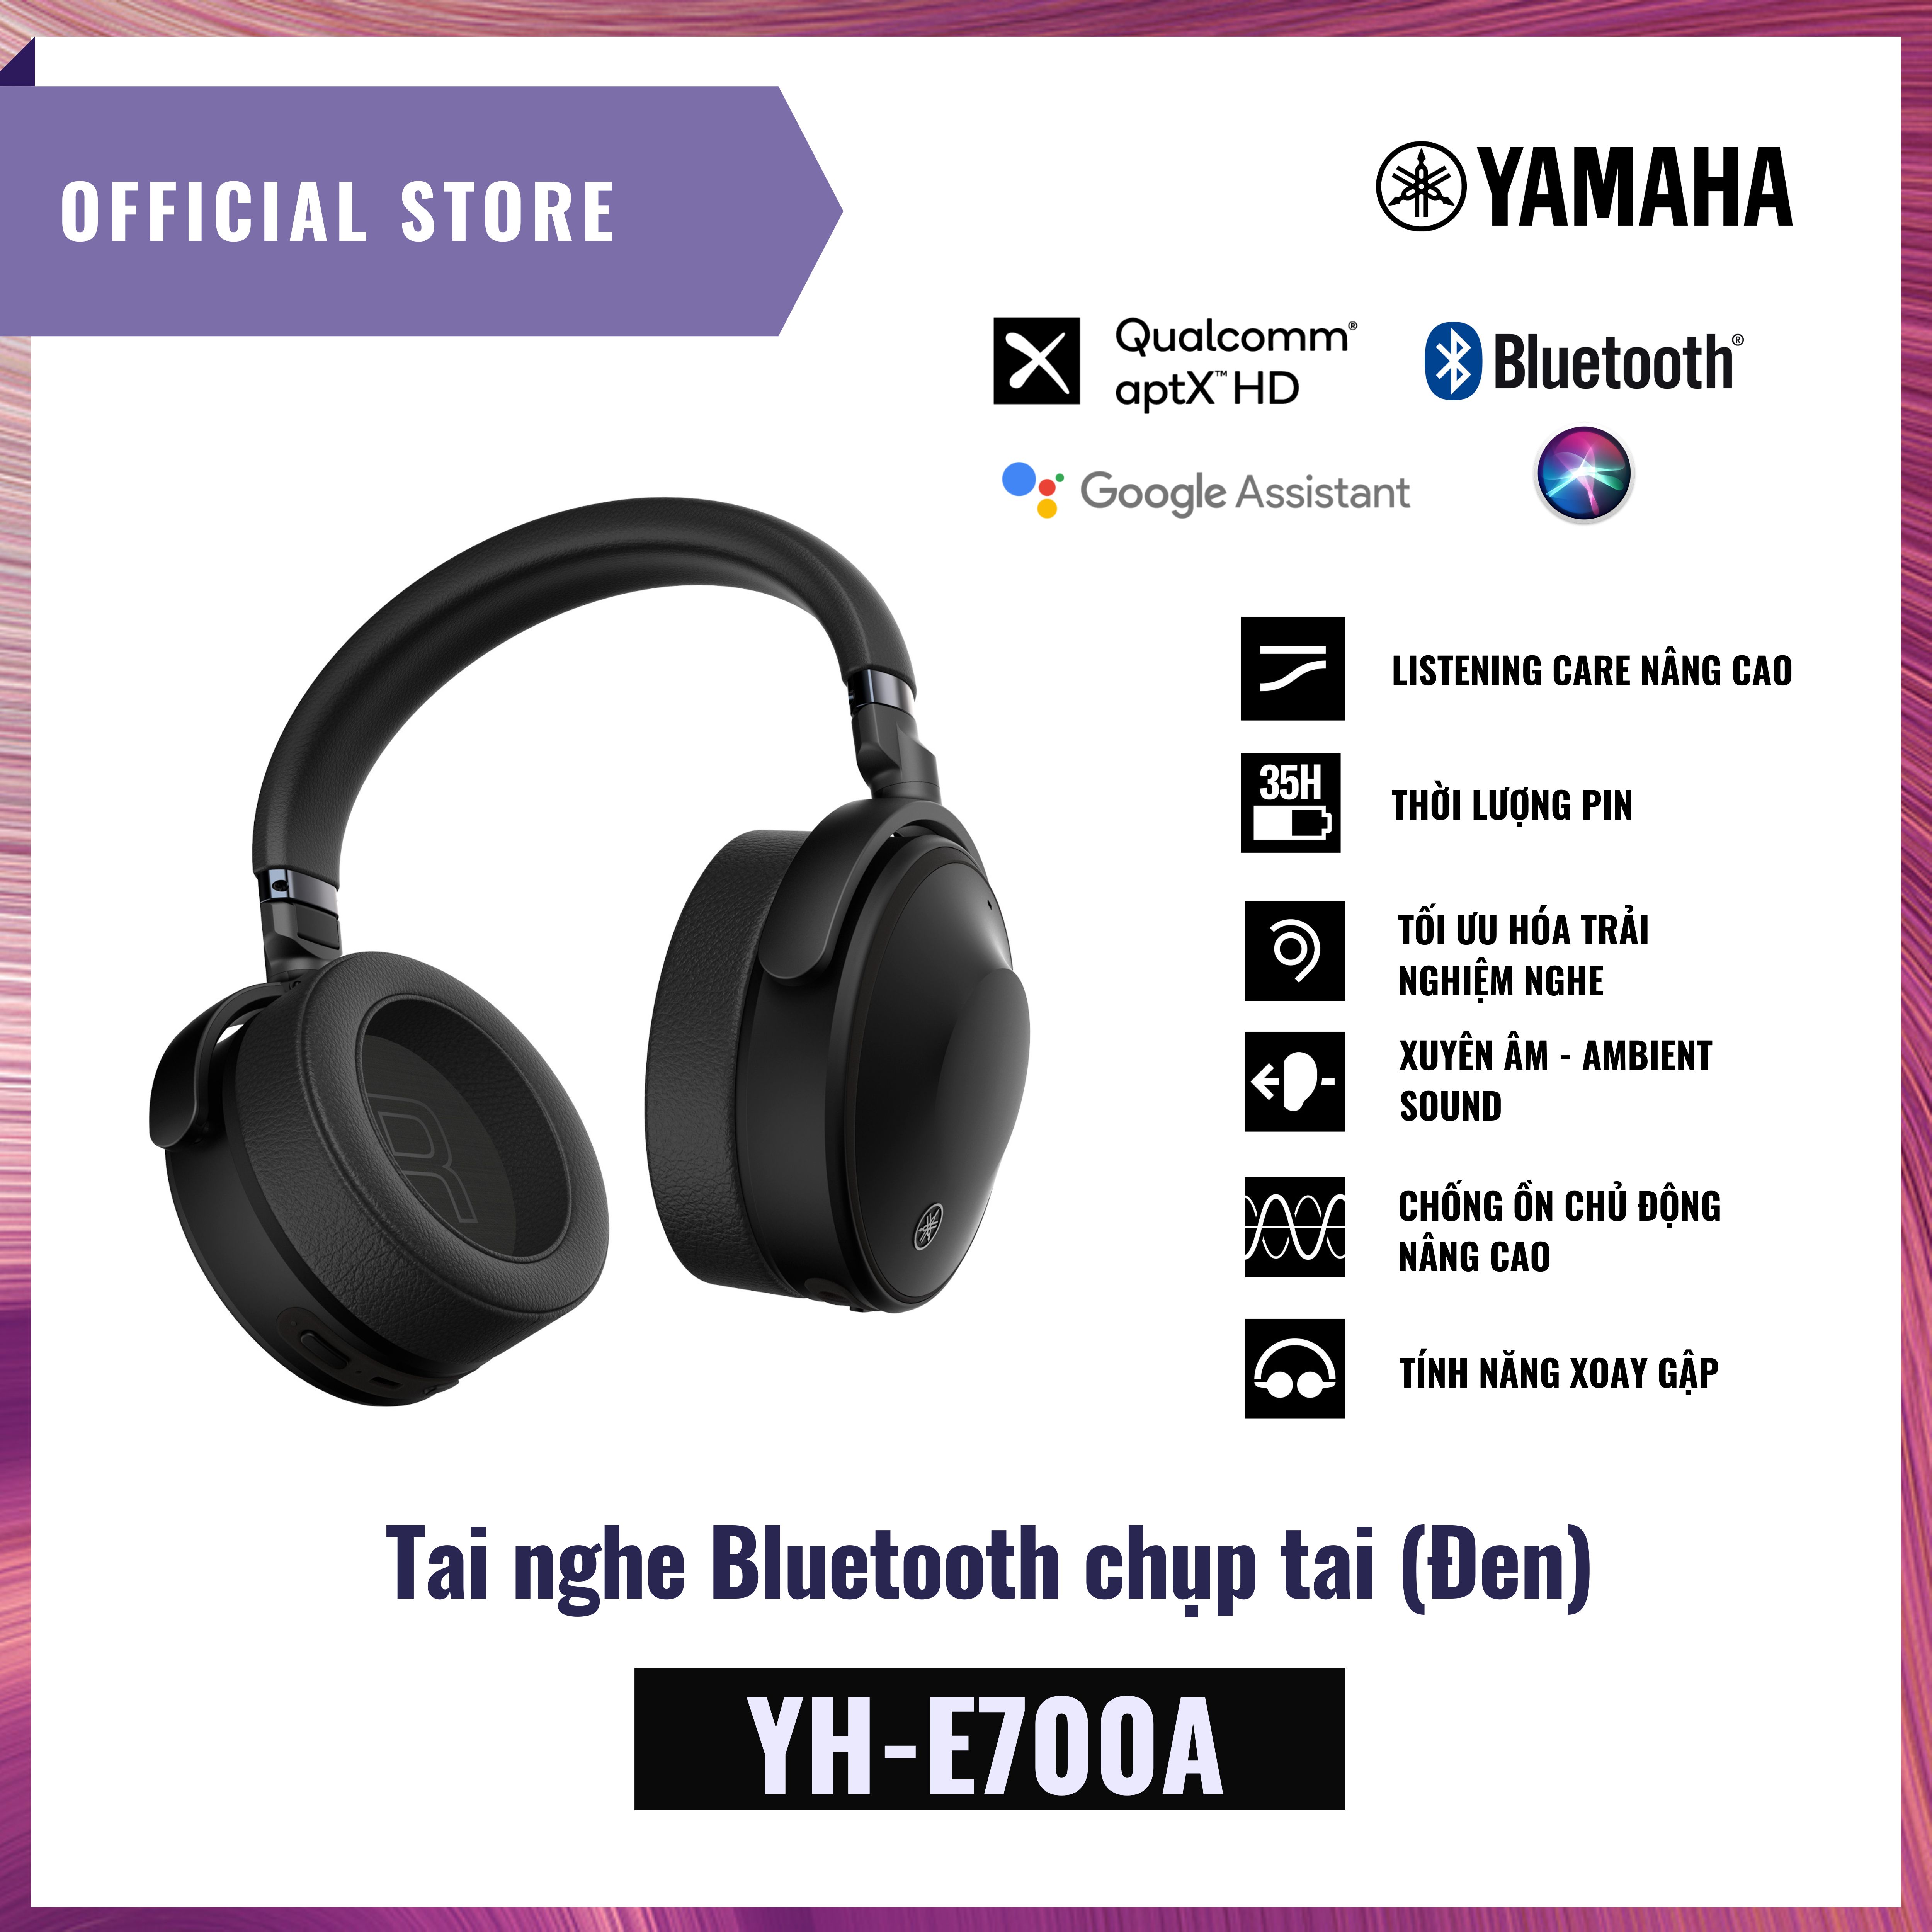 Tai nghe bluetooth  Yamaha YH-E700A - Tai nghe không dây chụp tai - Khả năng chống nước tốt - Hàng Chính Hãng